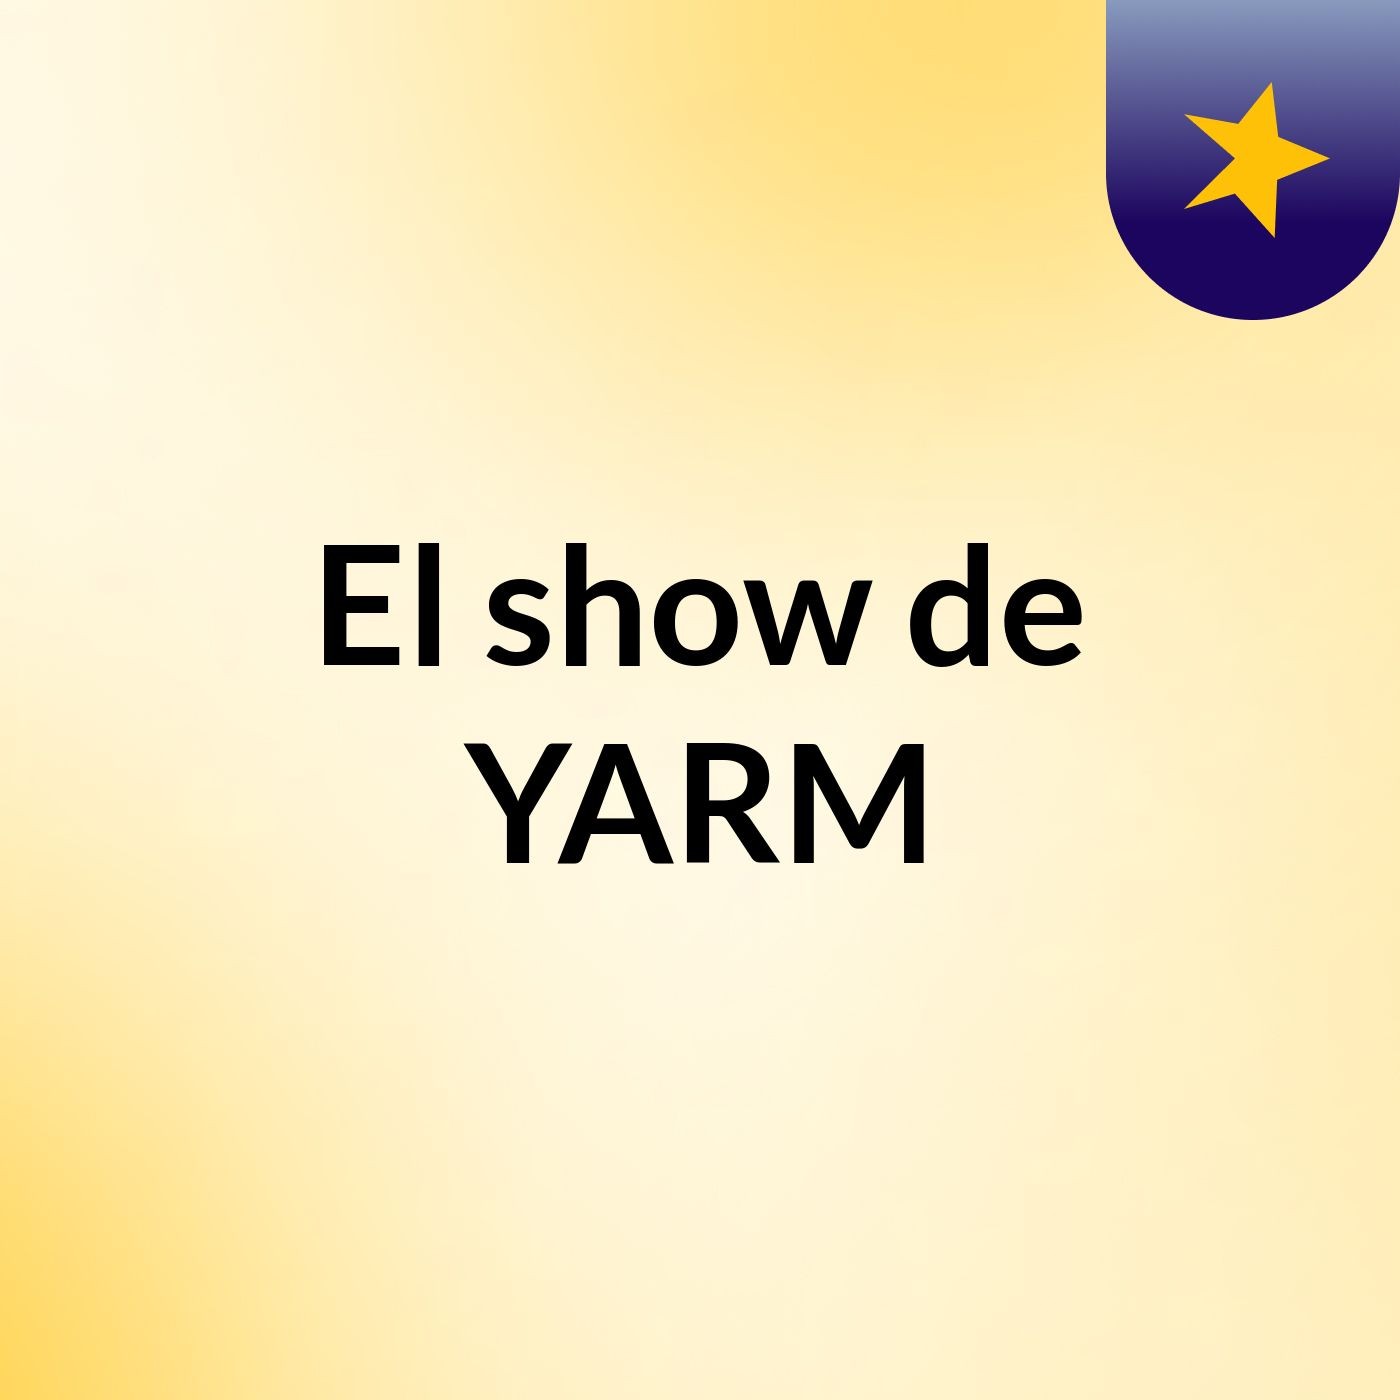 El show de YARM